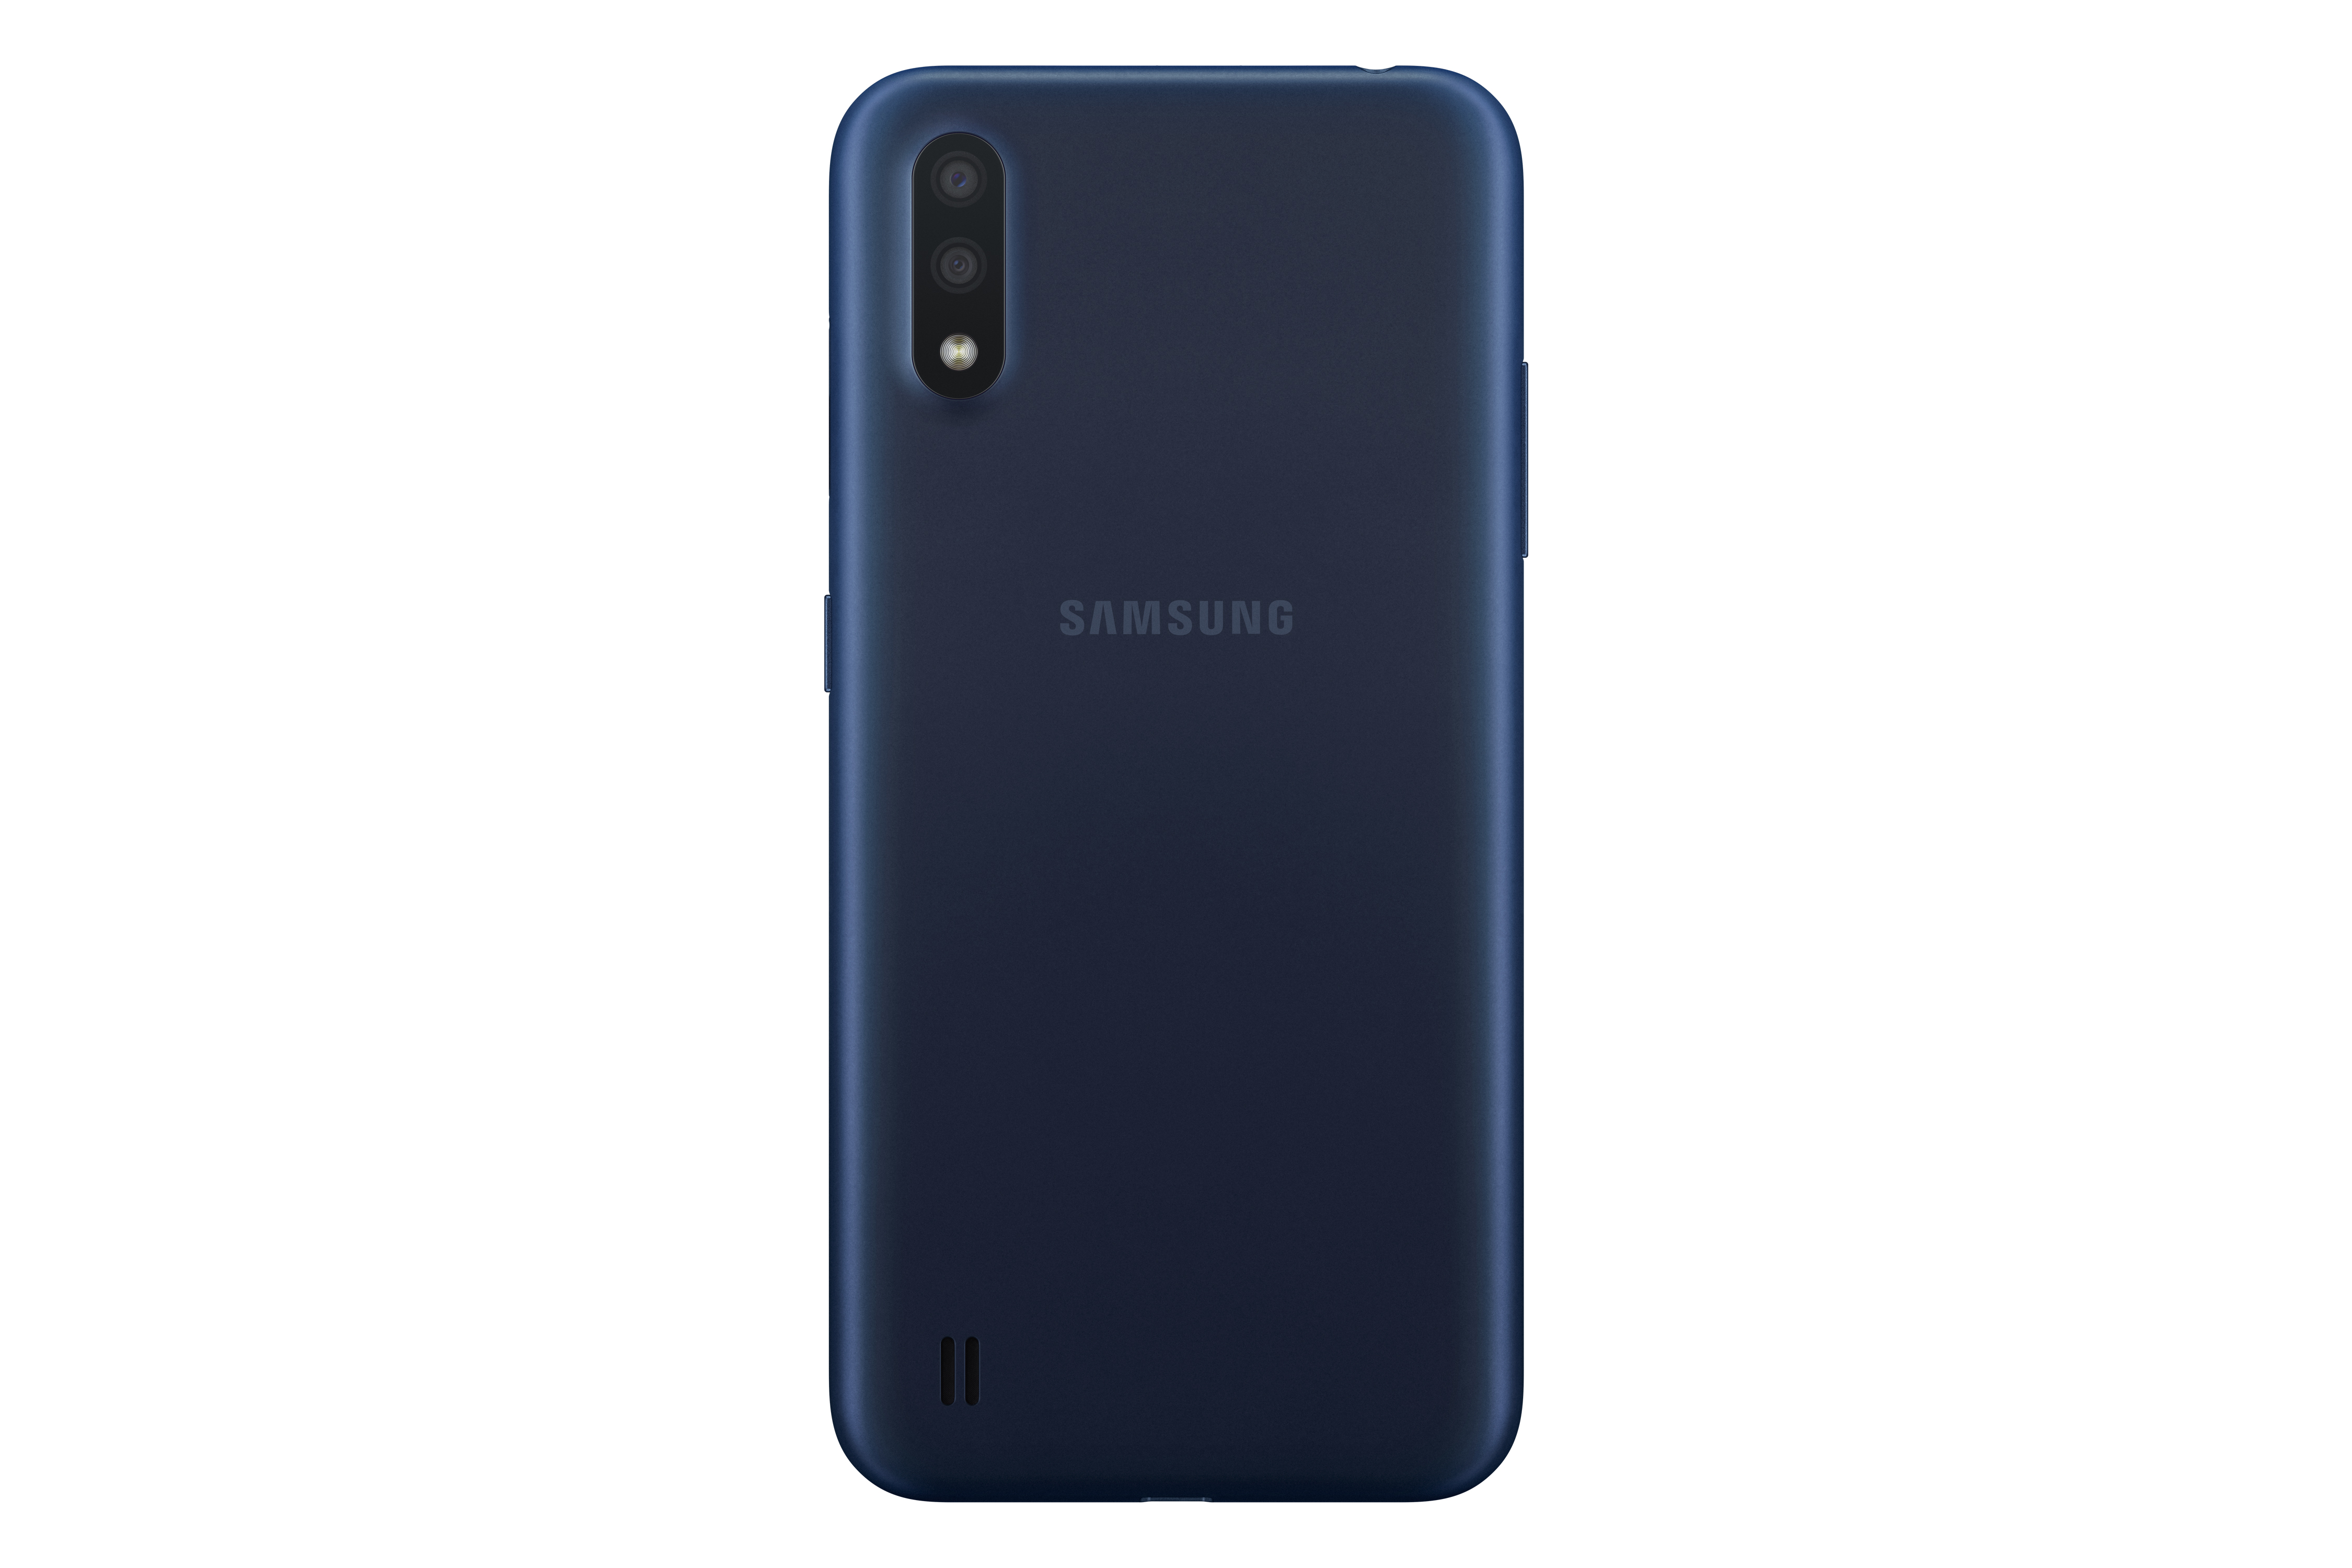 Samsung Galaxy a01